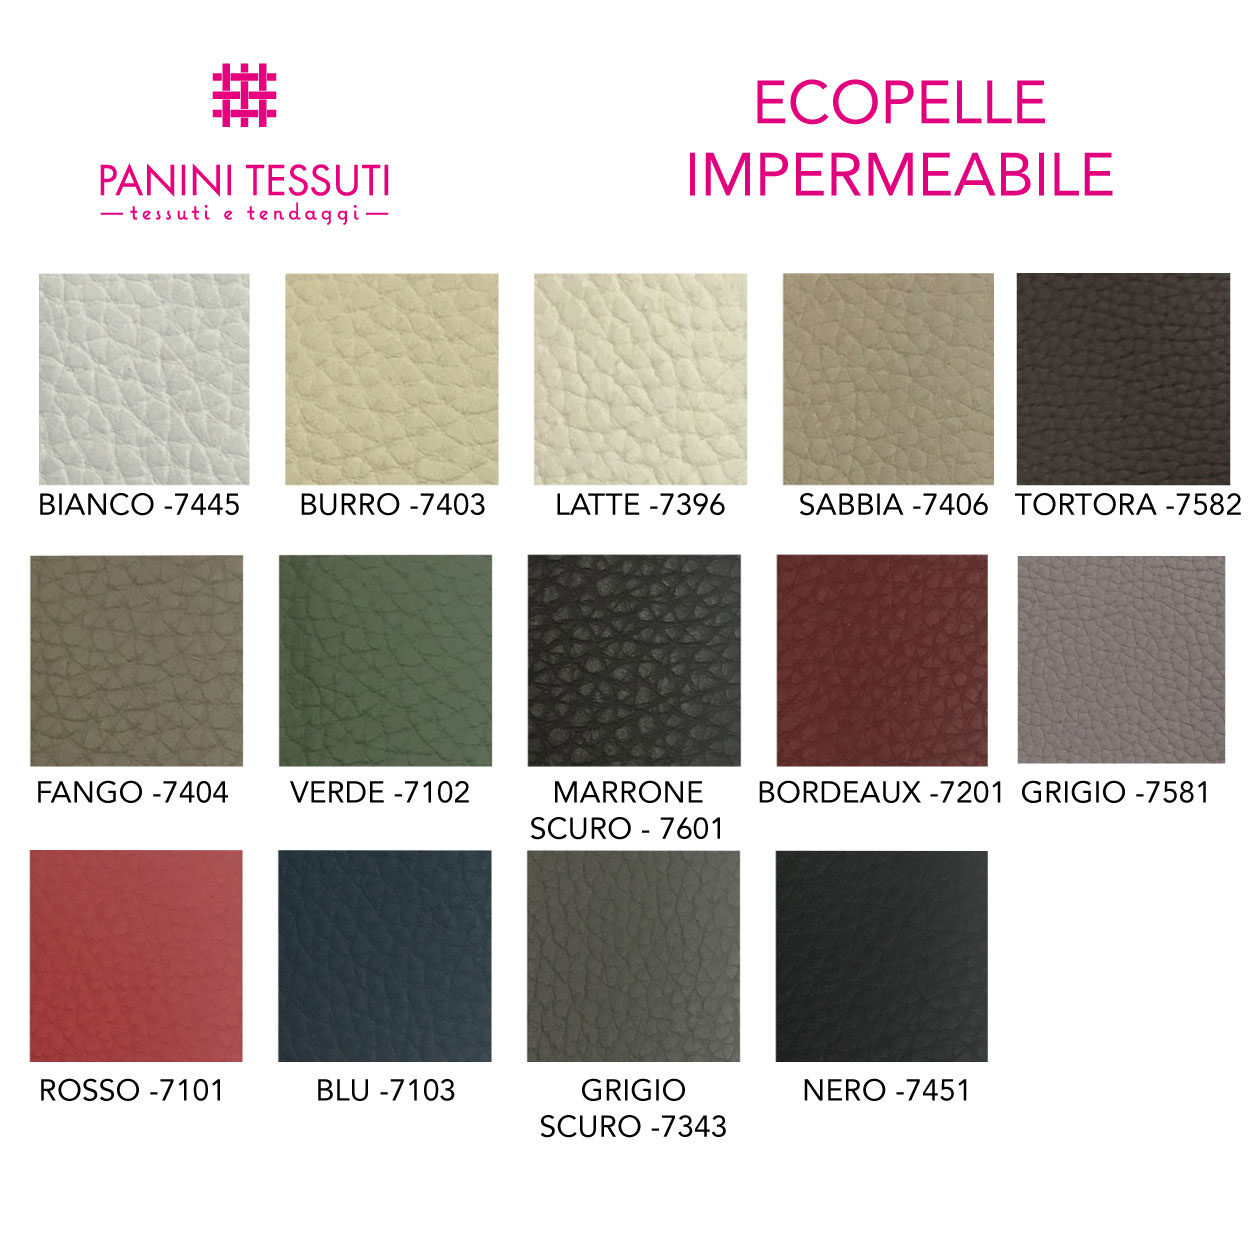 Ecopelle impermeabile cartella colore shopware (8)